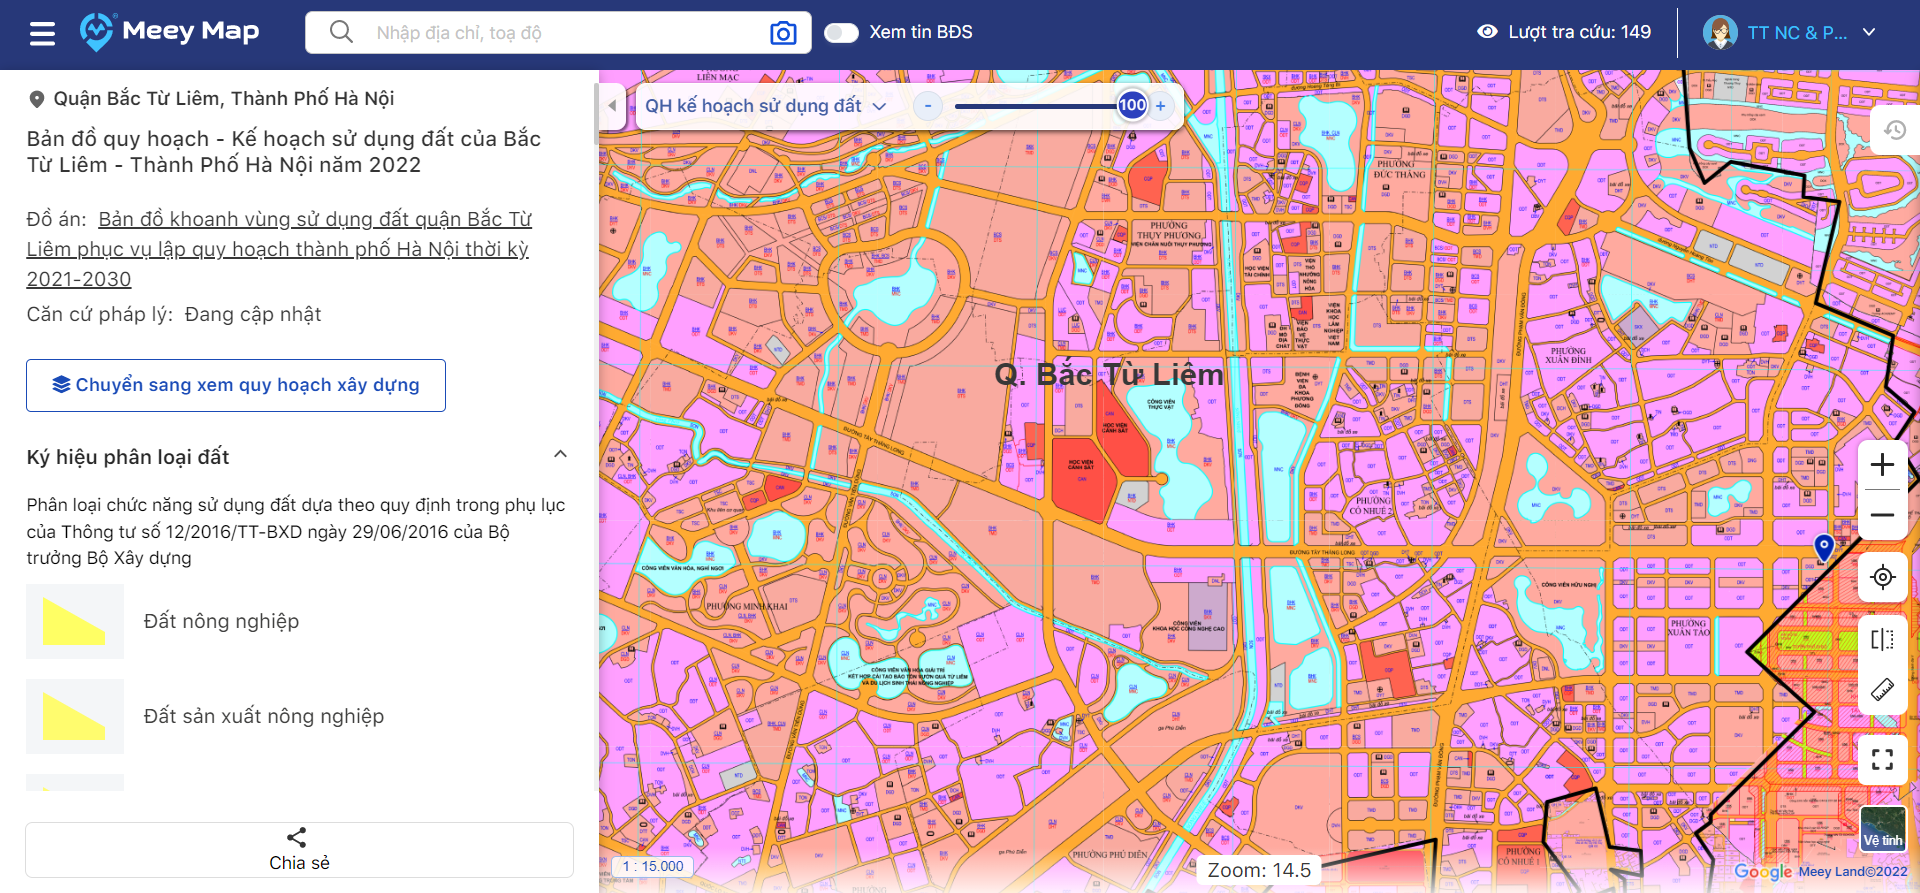 Bản đồ quy hoạch sử dụng đất huyện Lập Thạch, Vĩnh Phúc